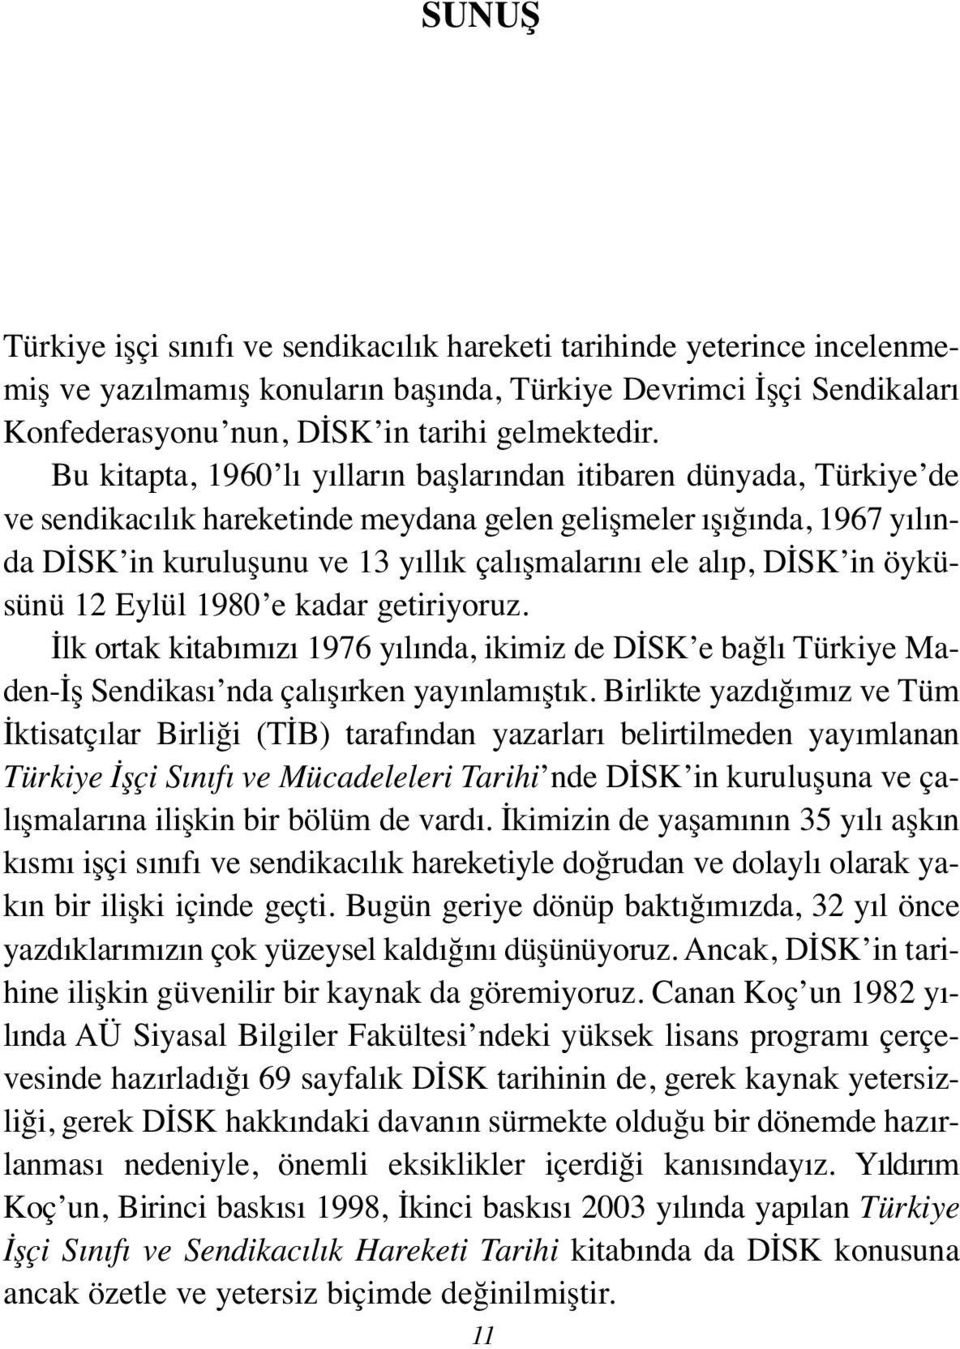 alıp, DİSK in öyküsünü 12 Eylül 1980 e kadar getiriyoruz. İlk ortak kitabımızı 1976 yılında, ikimiz de DİSK e bağlı Türkiye Maden-İş Sendikası nda çalışırken yayınlamıştık.